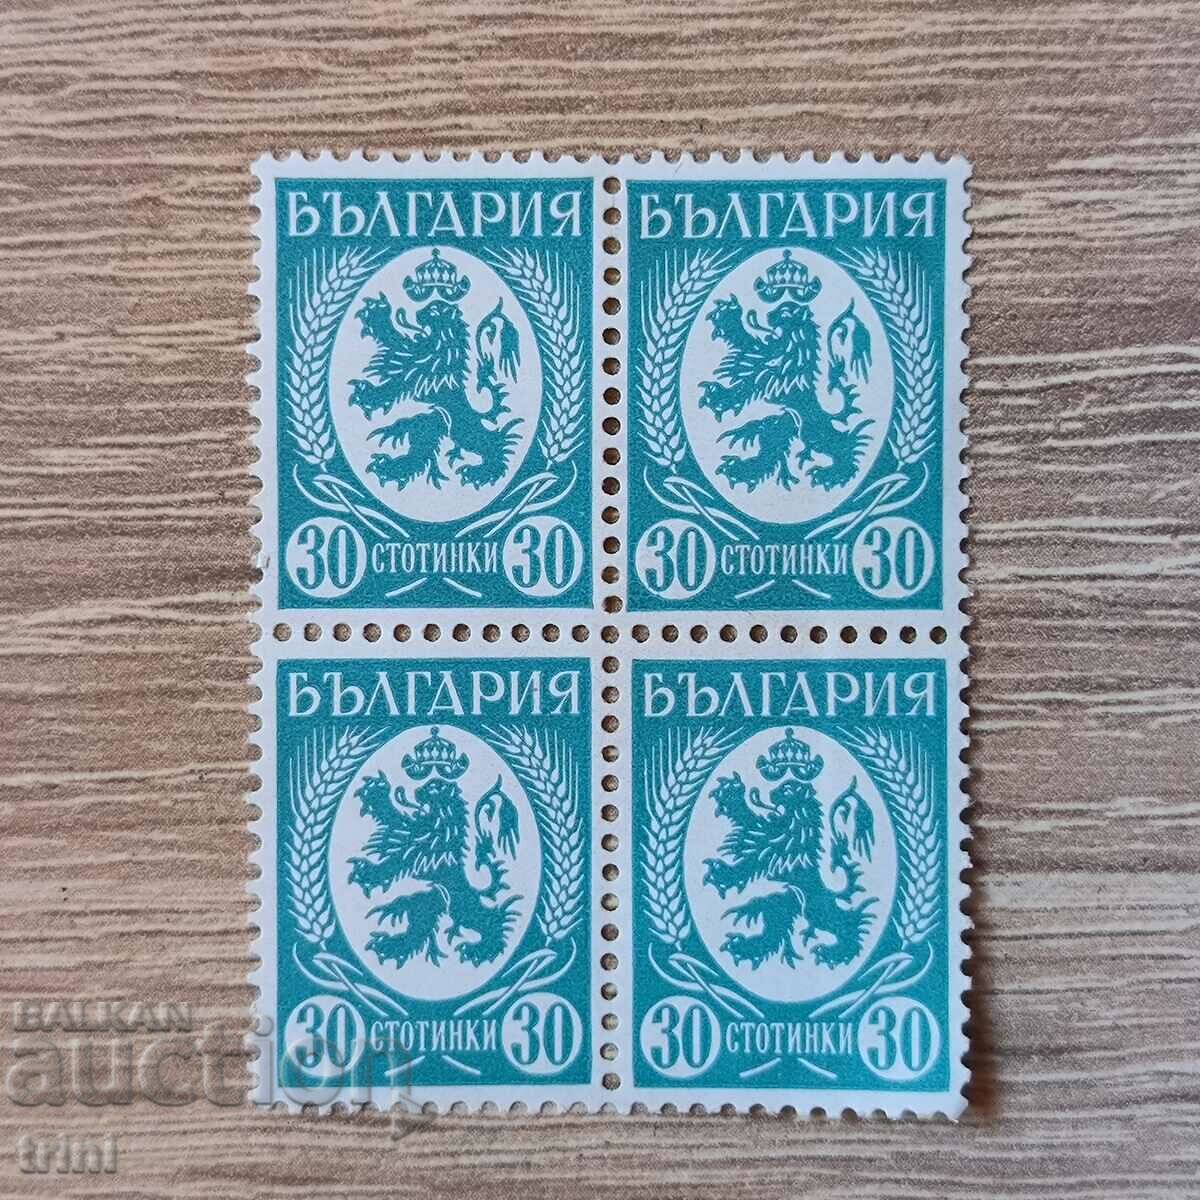 Βουλγαρία 1936 30 σεντς τετράγωνο μπλε παραλλαγή